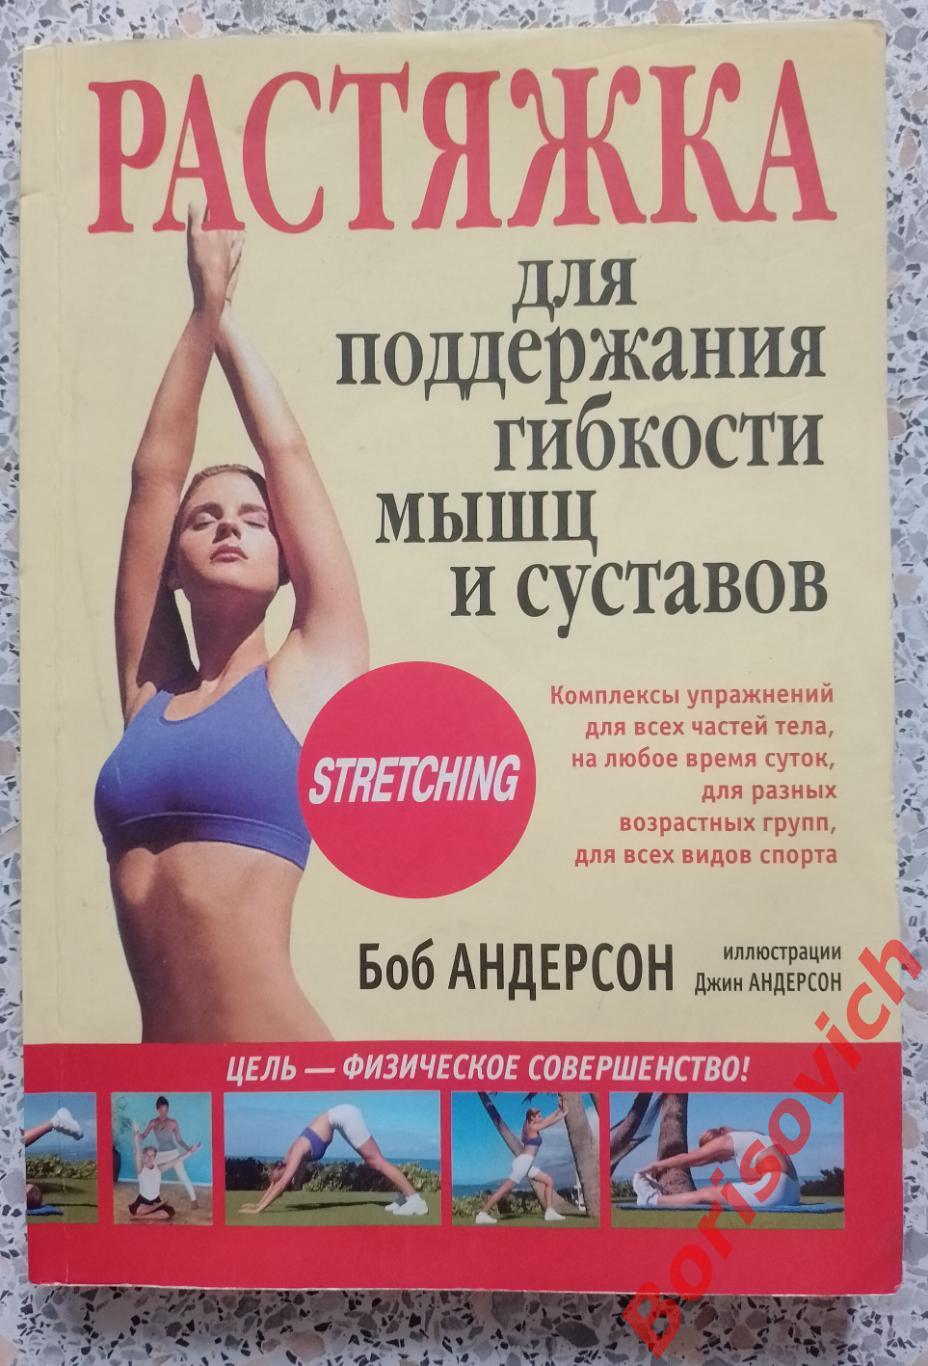 РАСТЯЖКА для поддержания гибкости мышц и суставов Минск 2009 Тираж 6000 экз